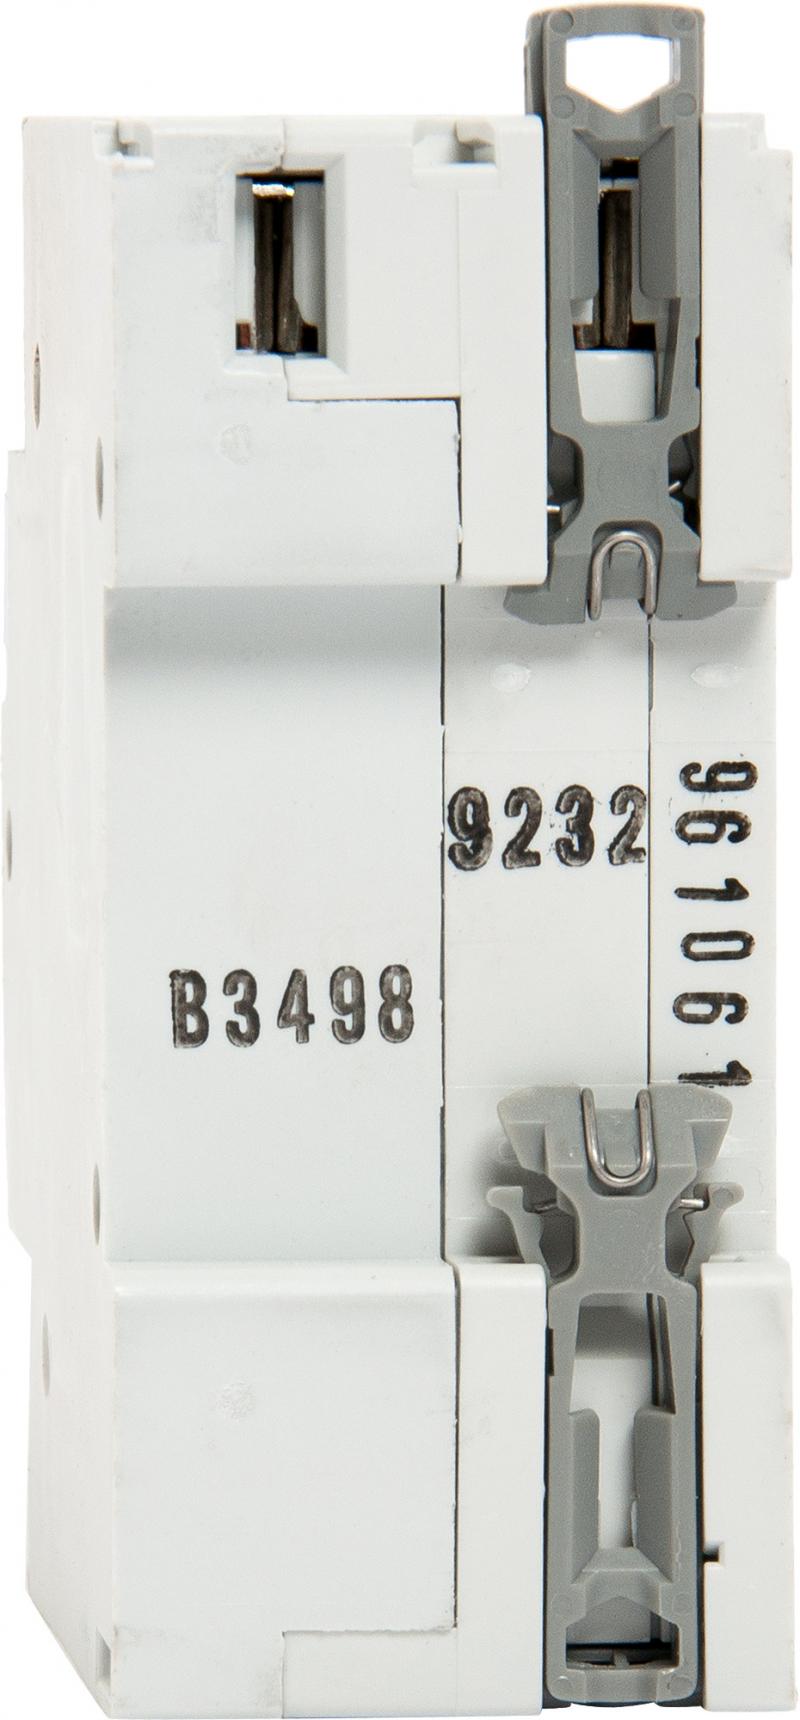 Автоматический выключатель дифференциального тока Legrand DX3 1P N C10 A 30 мА 6 кА AC 411000